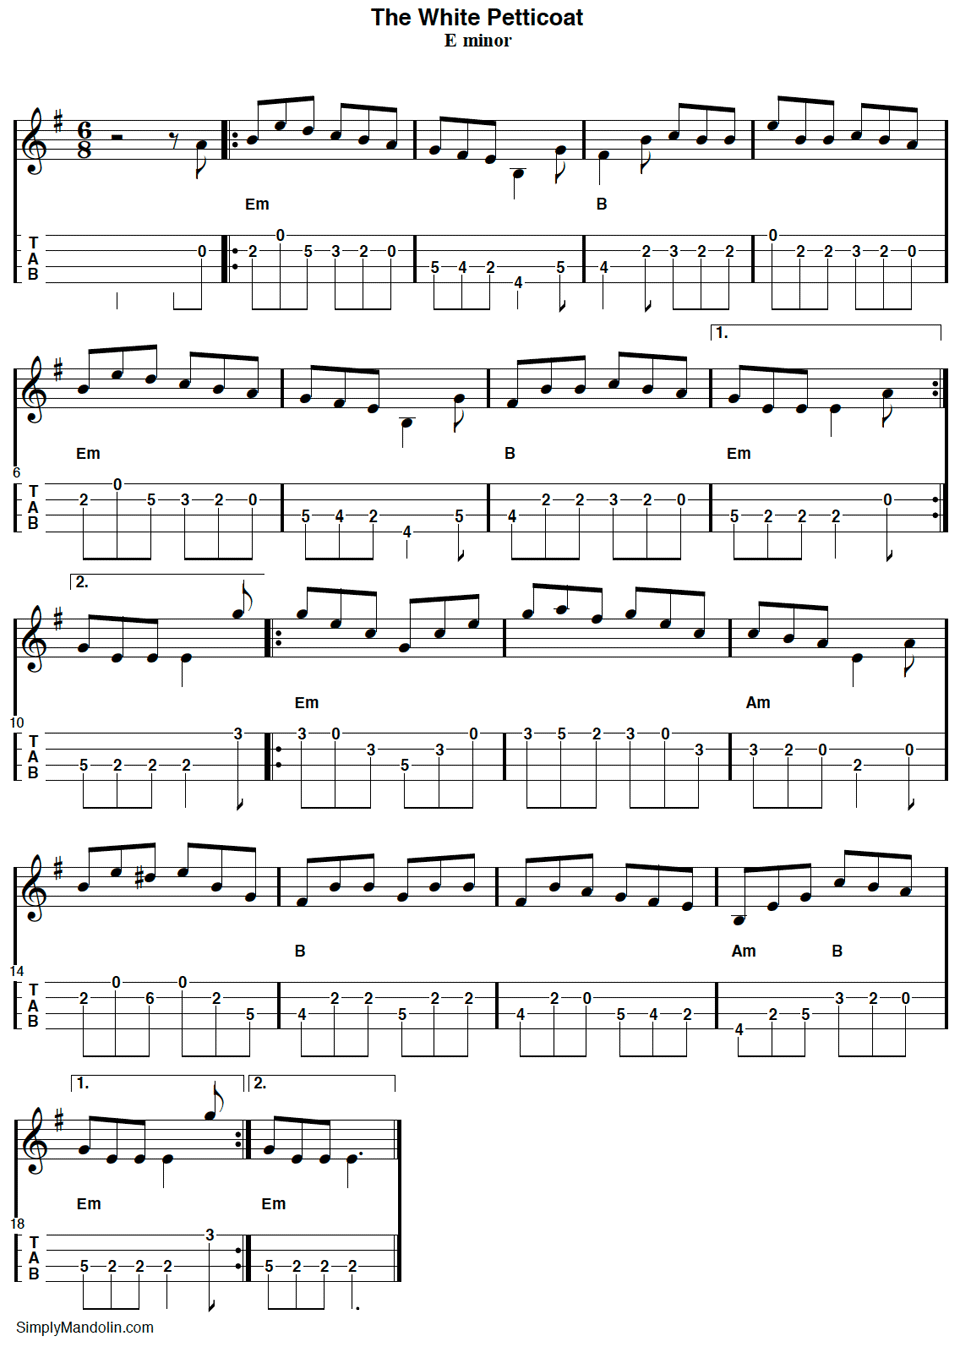 Mandolin Tablature for the tune The White Petticoat